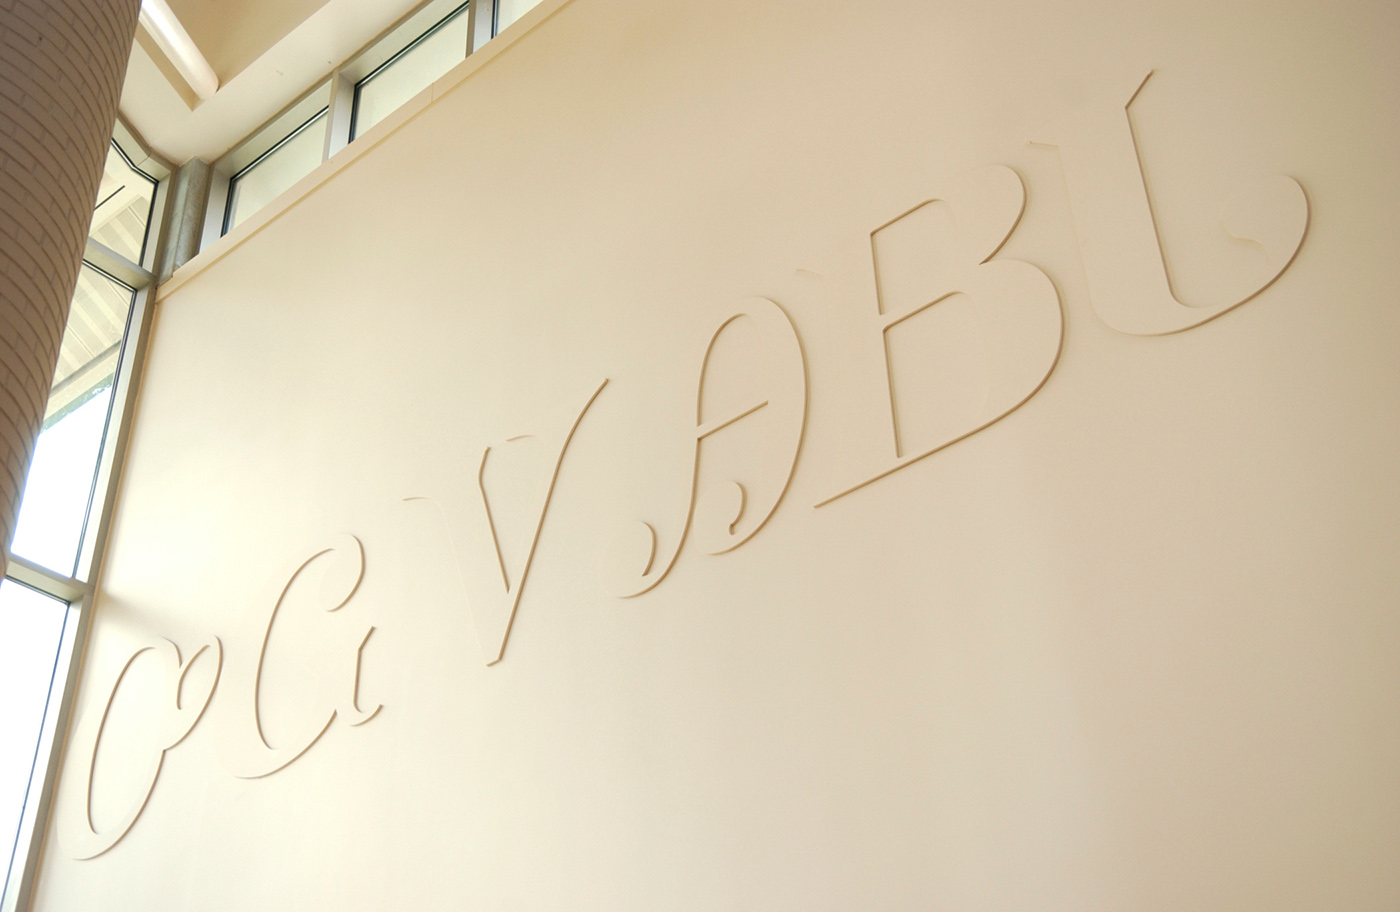 Cherokee Syllabary on the wall at Bardo Arts Center